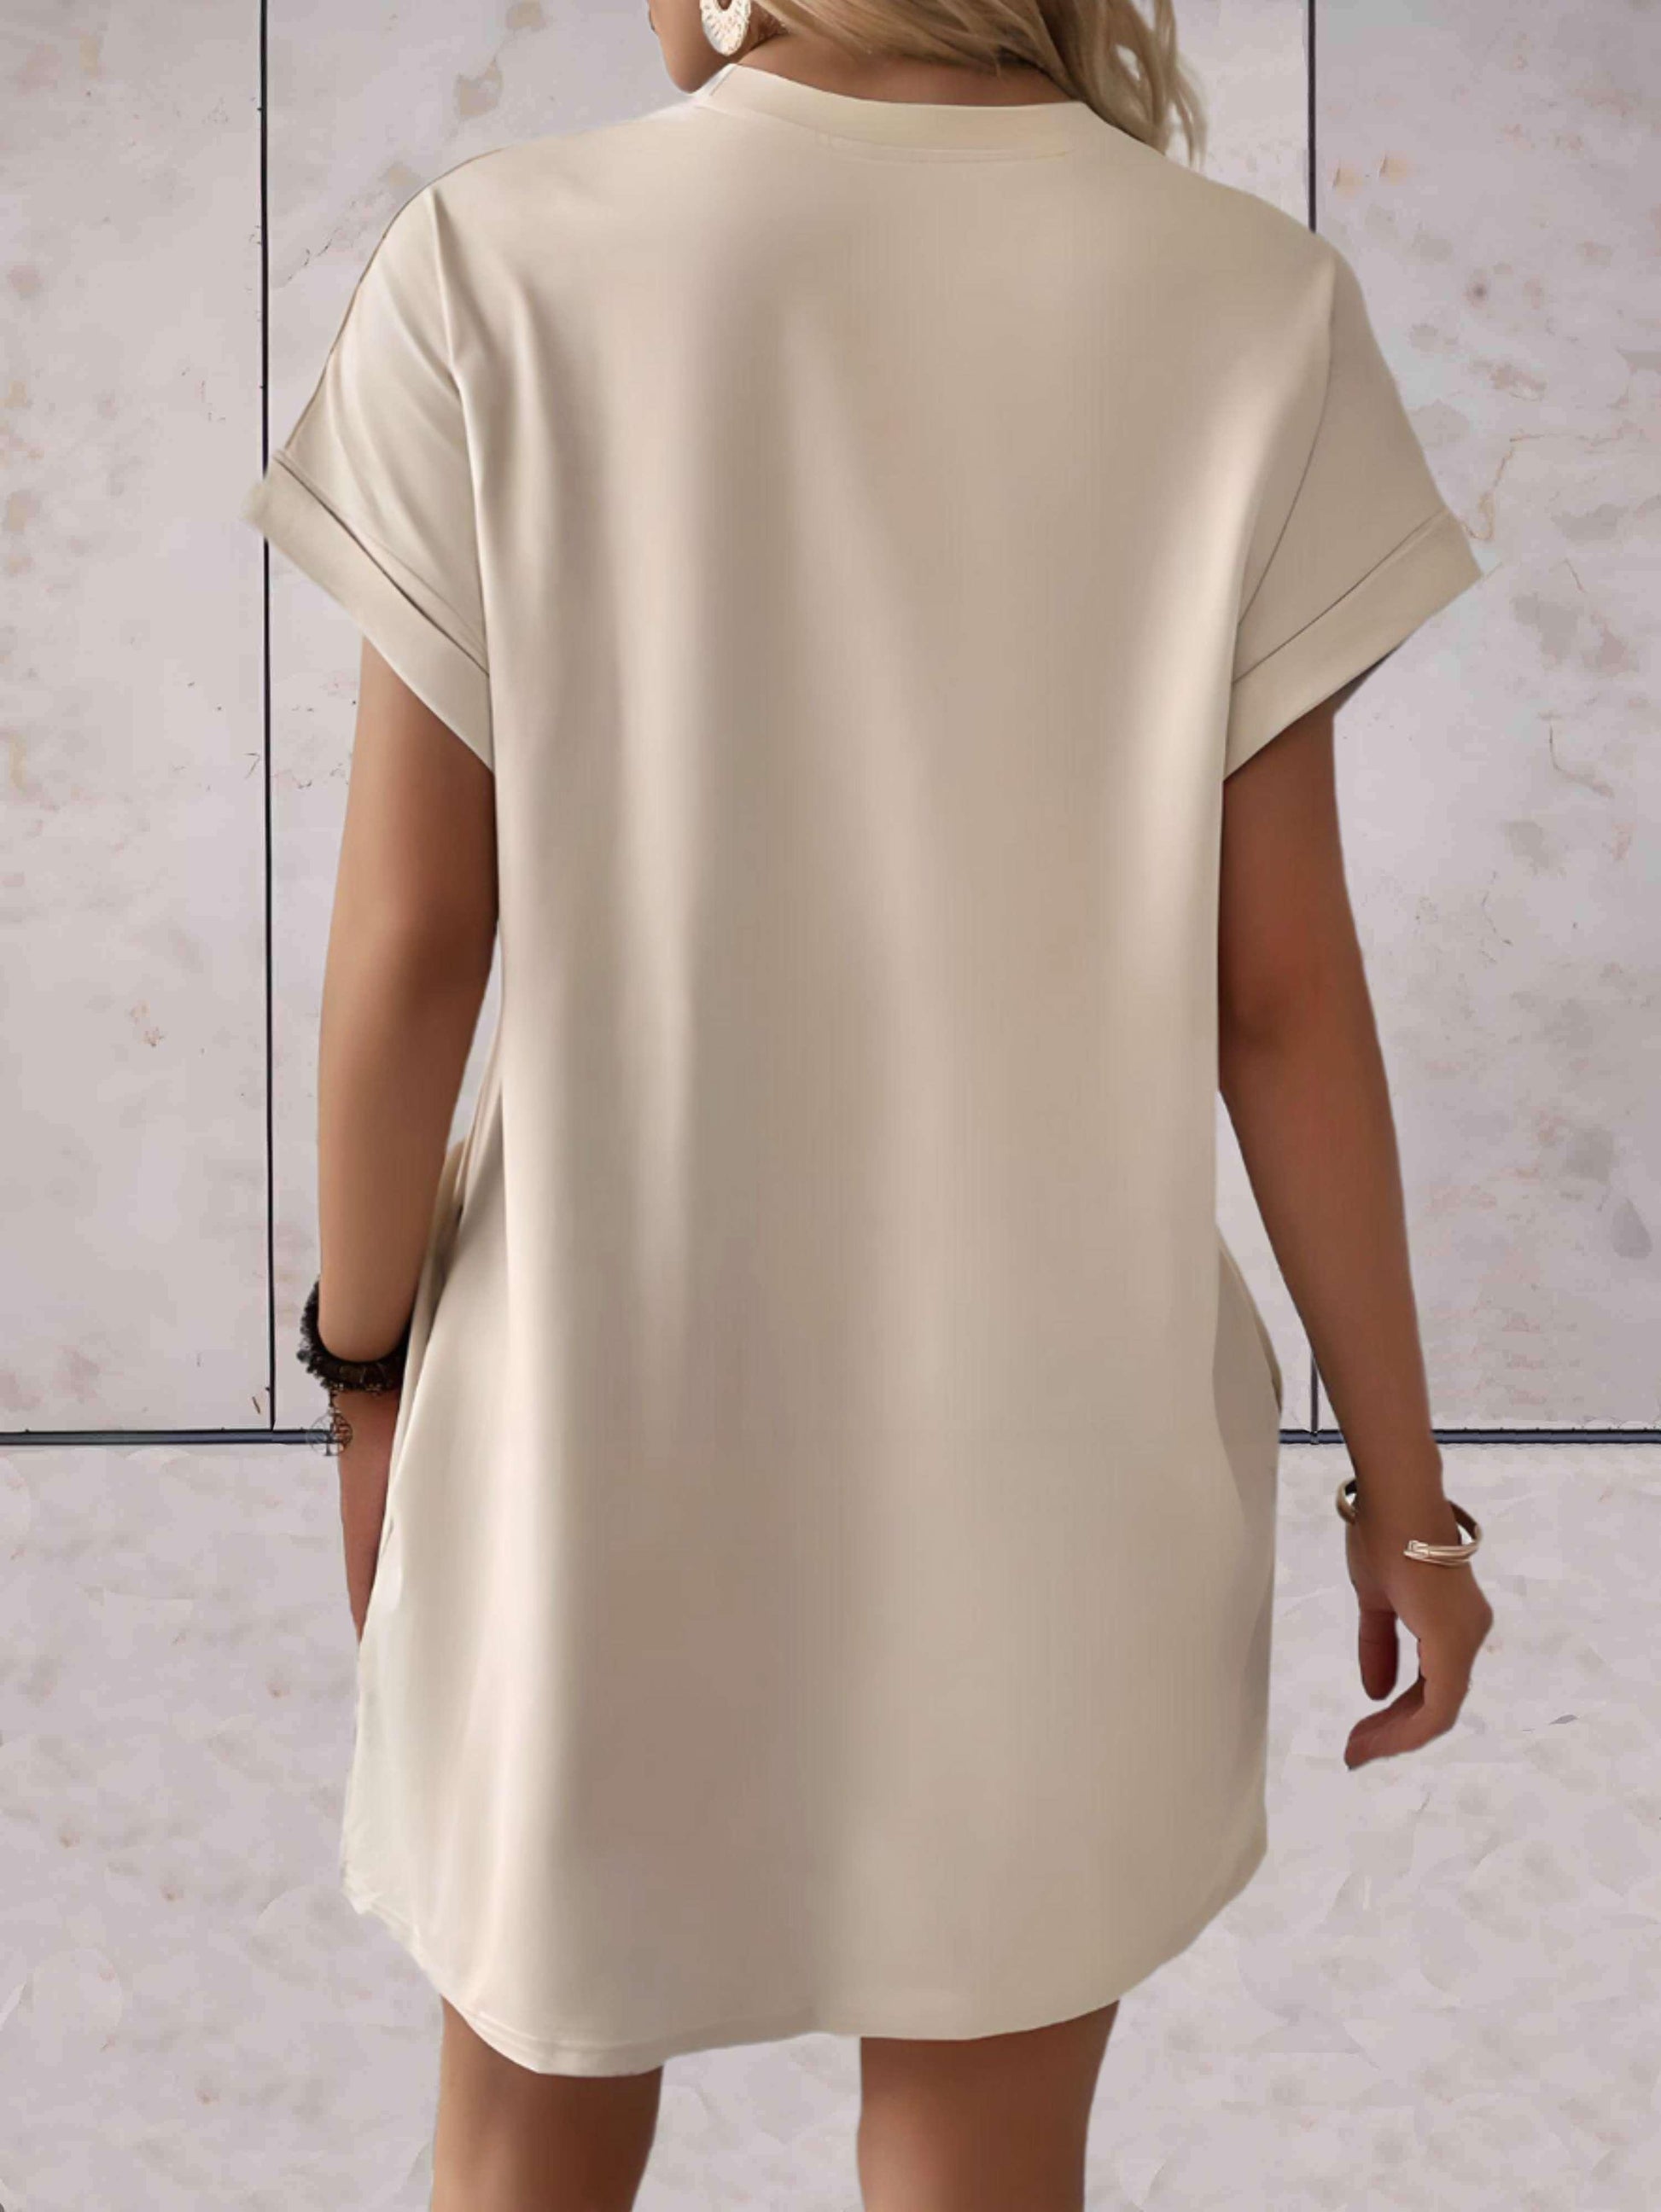 Mavyl - Effen mooi aansluitende jurk ronde hals korte en wijde mouwen boven kniehoogte met steekzakken - Sky-Sense